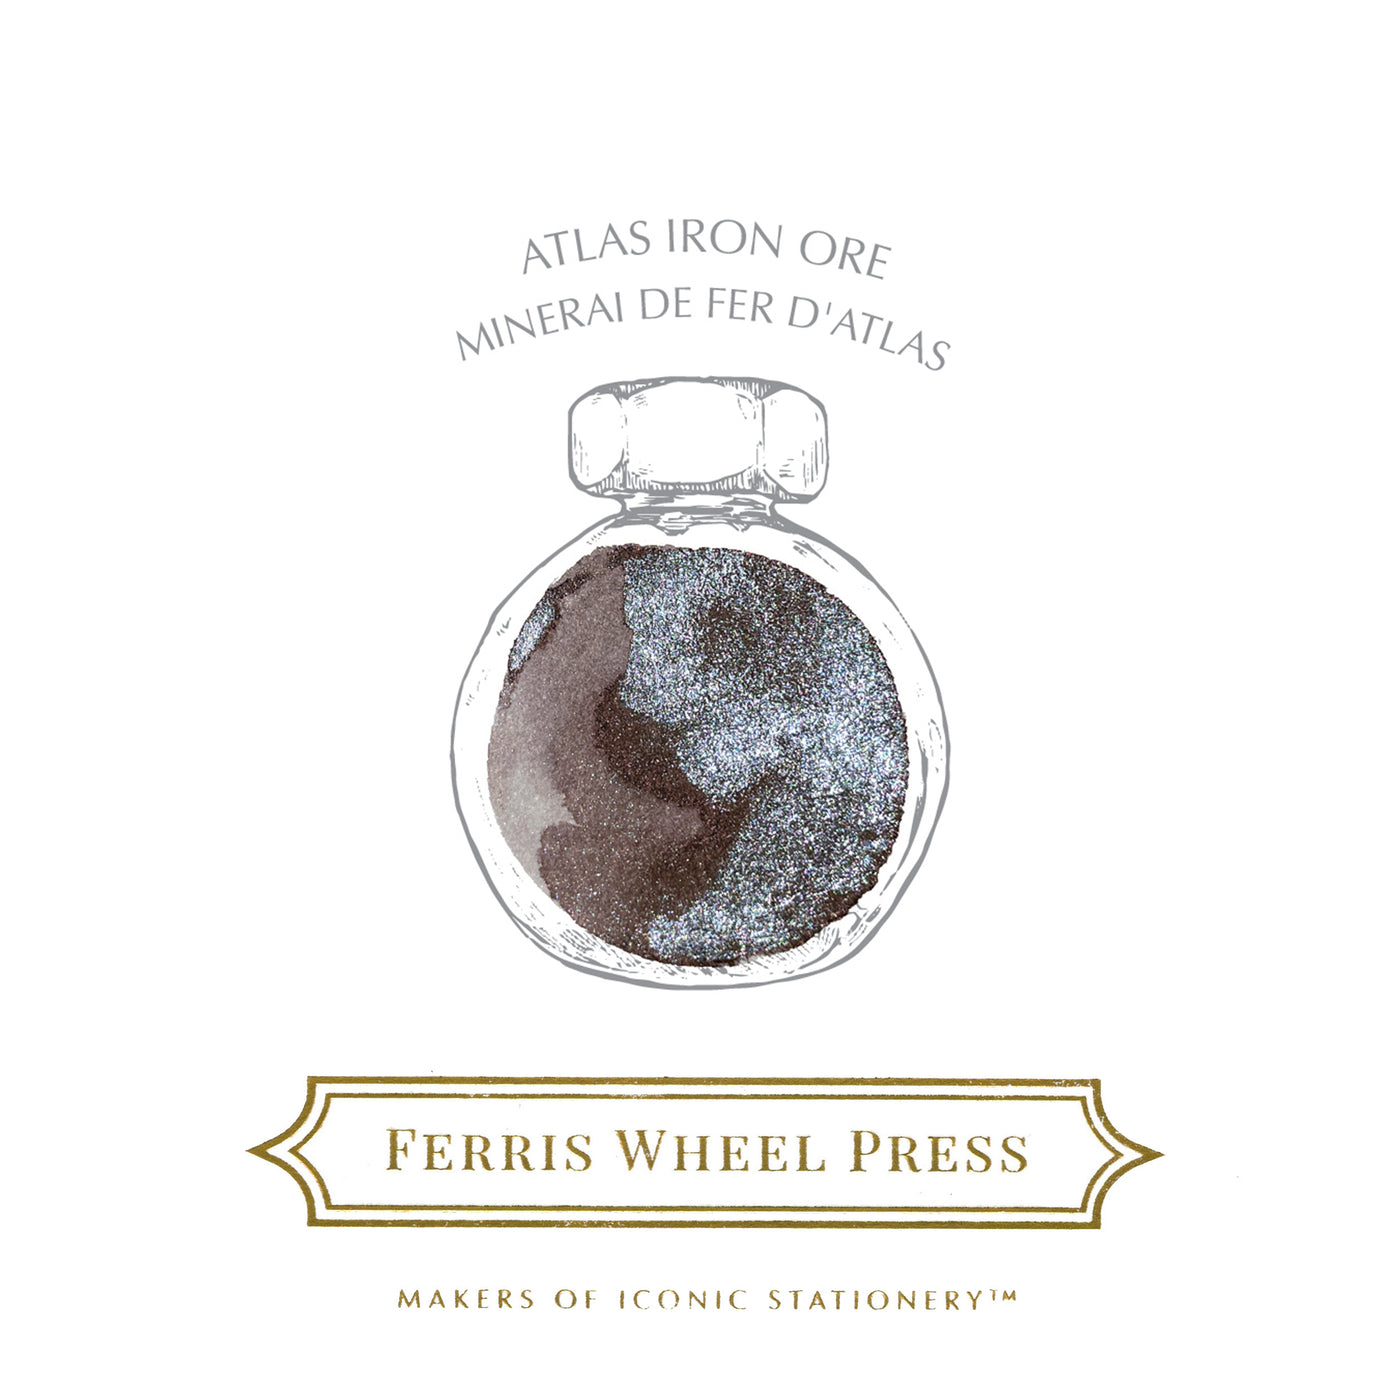 Ferris Wheel Press 38ml bottled Ink - Atlas Iron Ore (Atlas Exclusive) | Atlas Stationers.